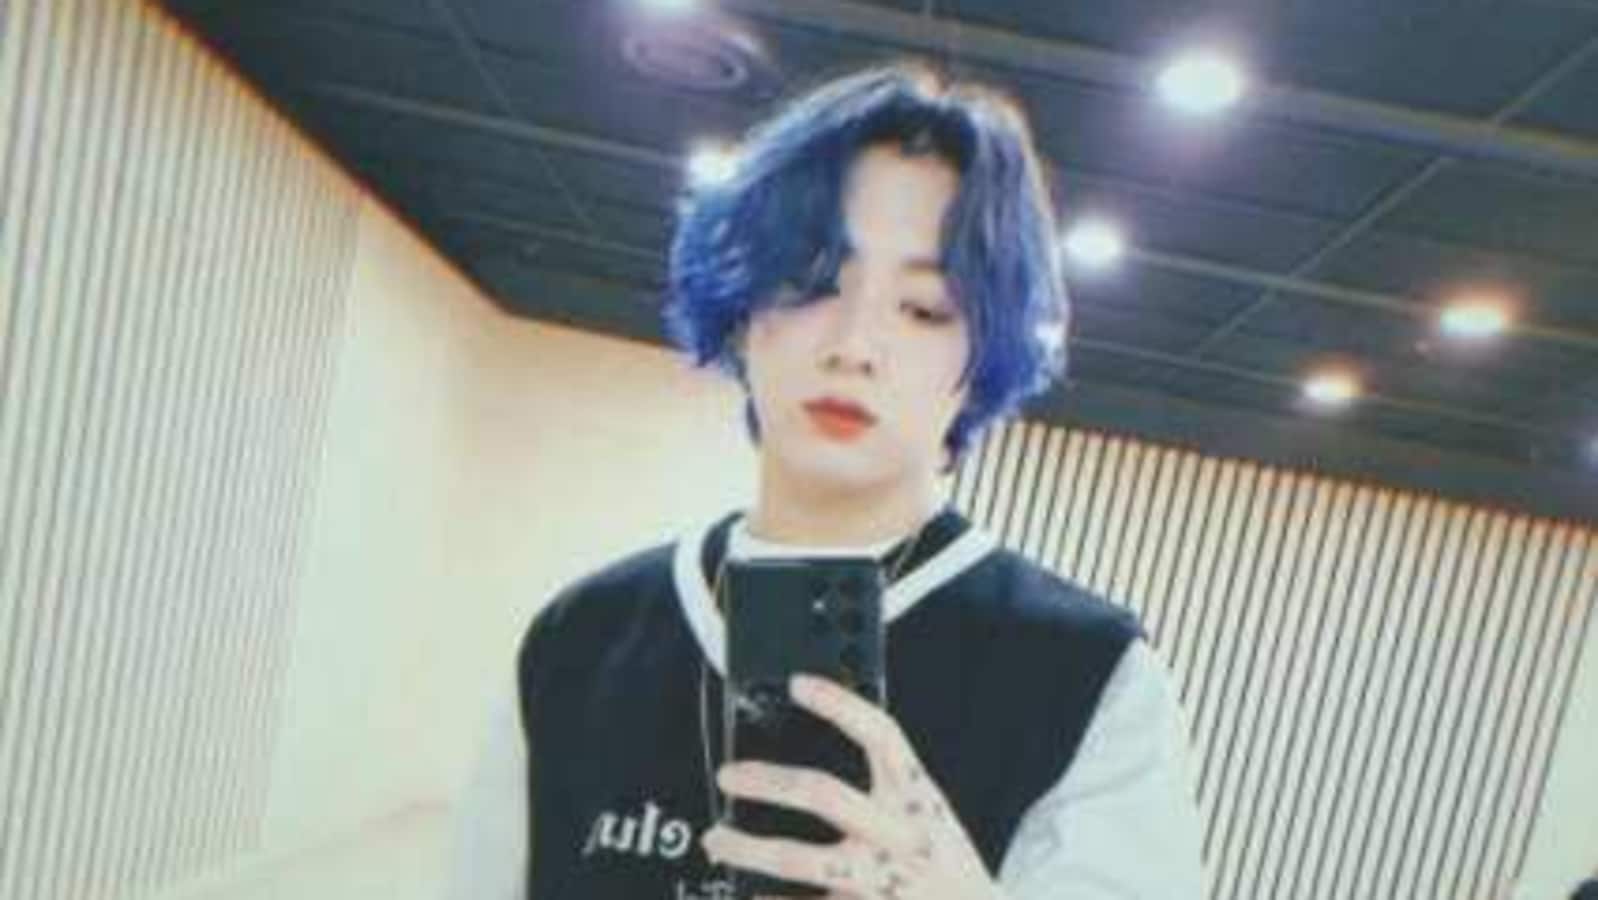 Blue hair boy BTS - wide 9